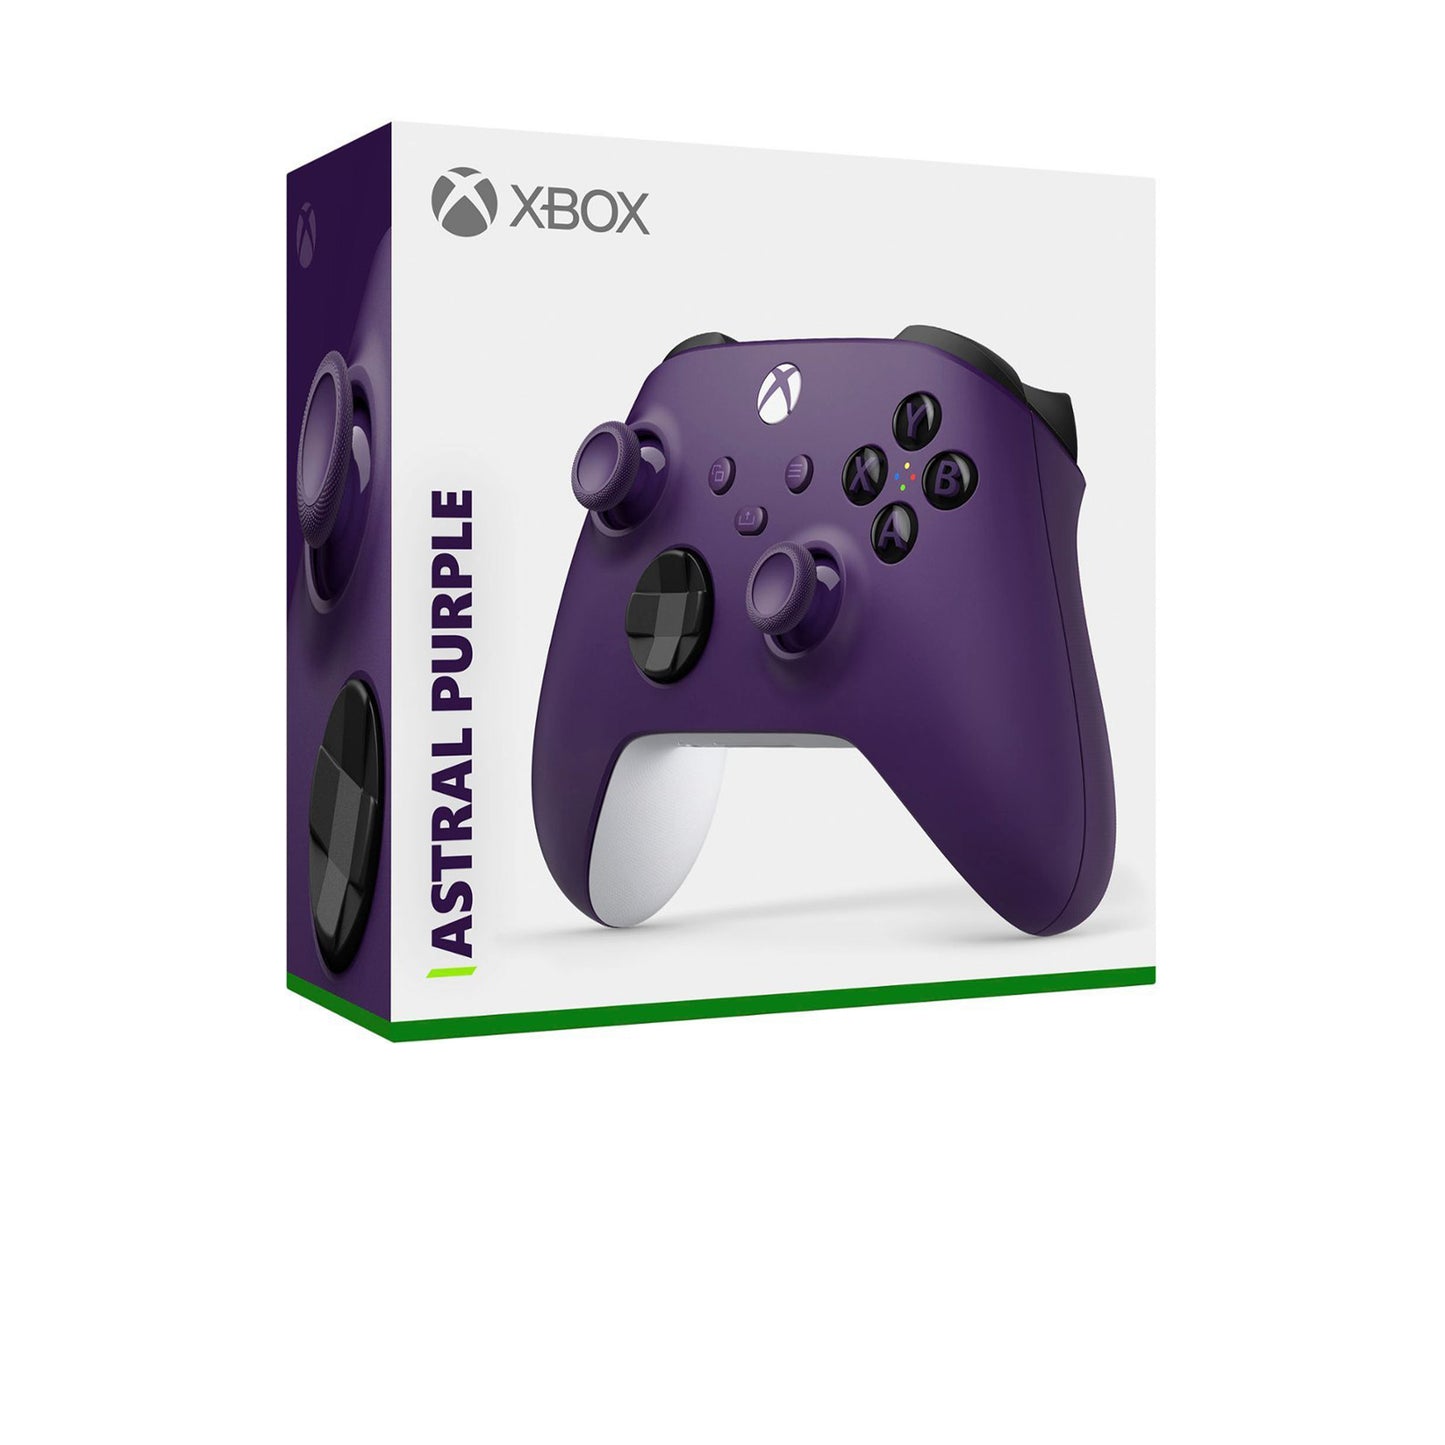 مايكروسوفت - وحدة تحكم Xbox اللاسلكية لأجهزة Xbox Series X وXbox Series S وXbox One وأجهزة Windows - Astral Purple 